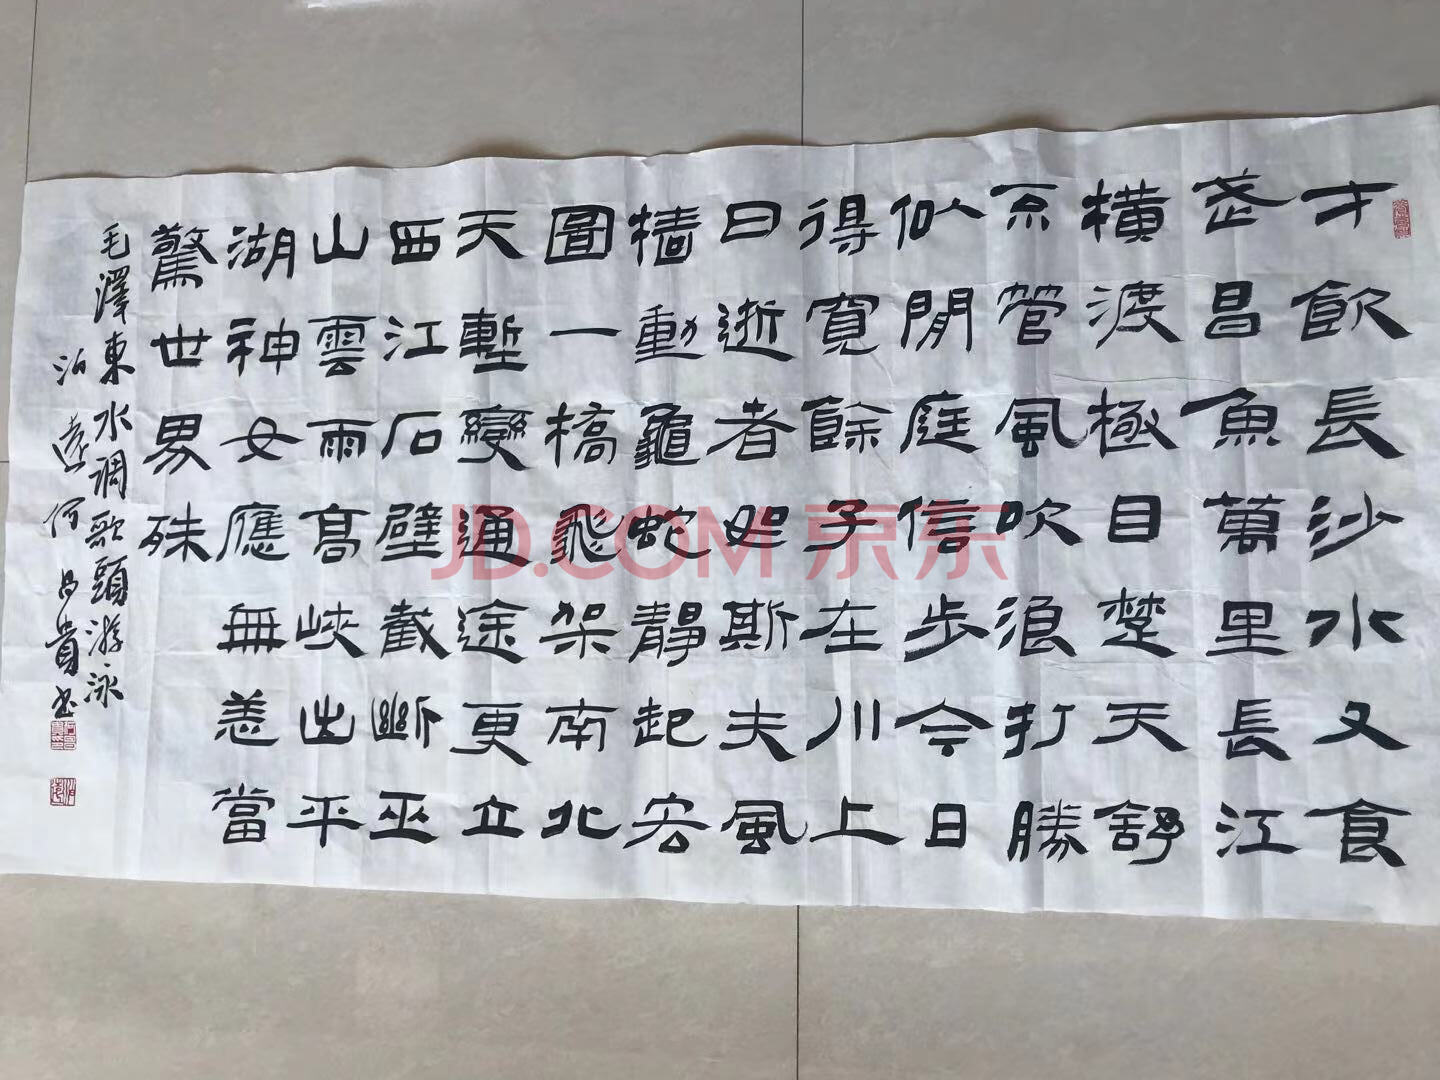 广西万信拍卖有限公司拍卖江西省某执法部门涉案物资